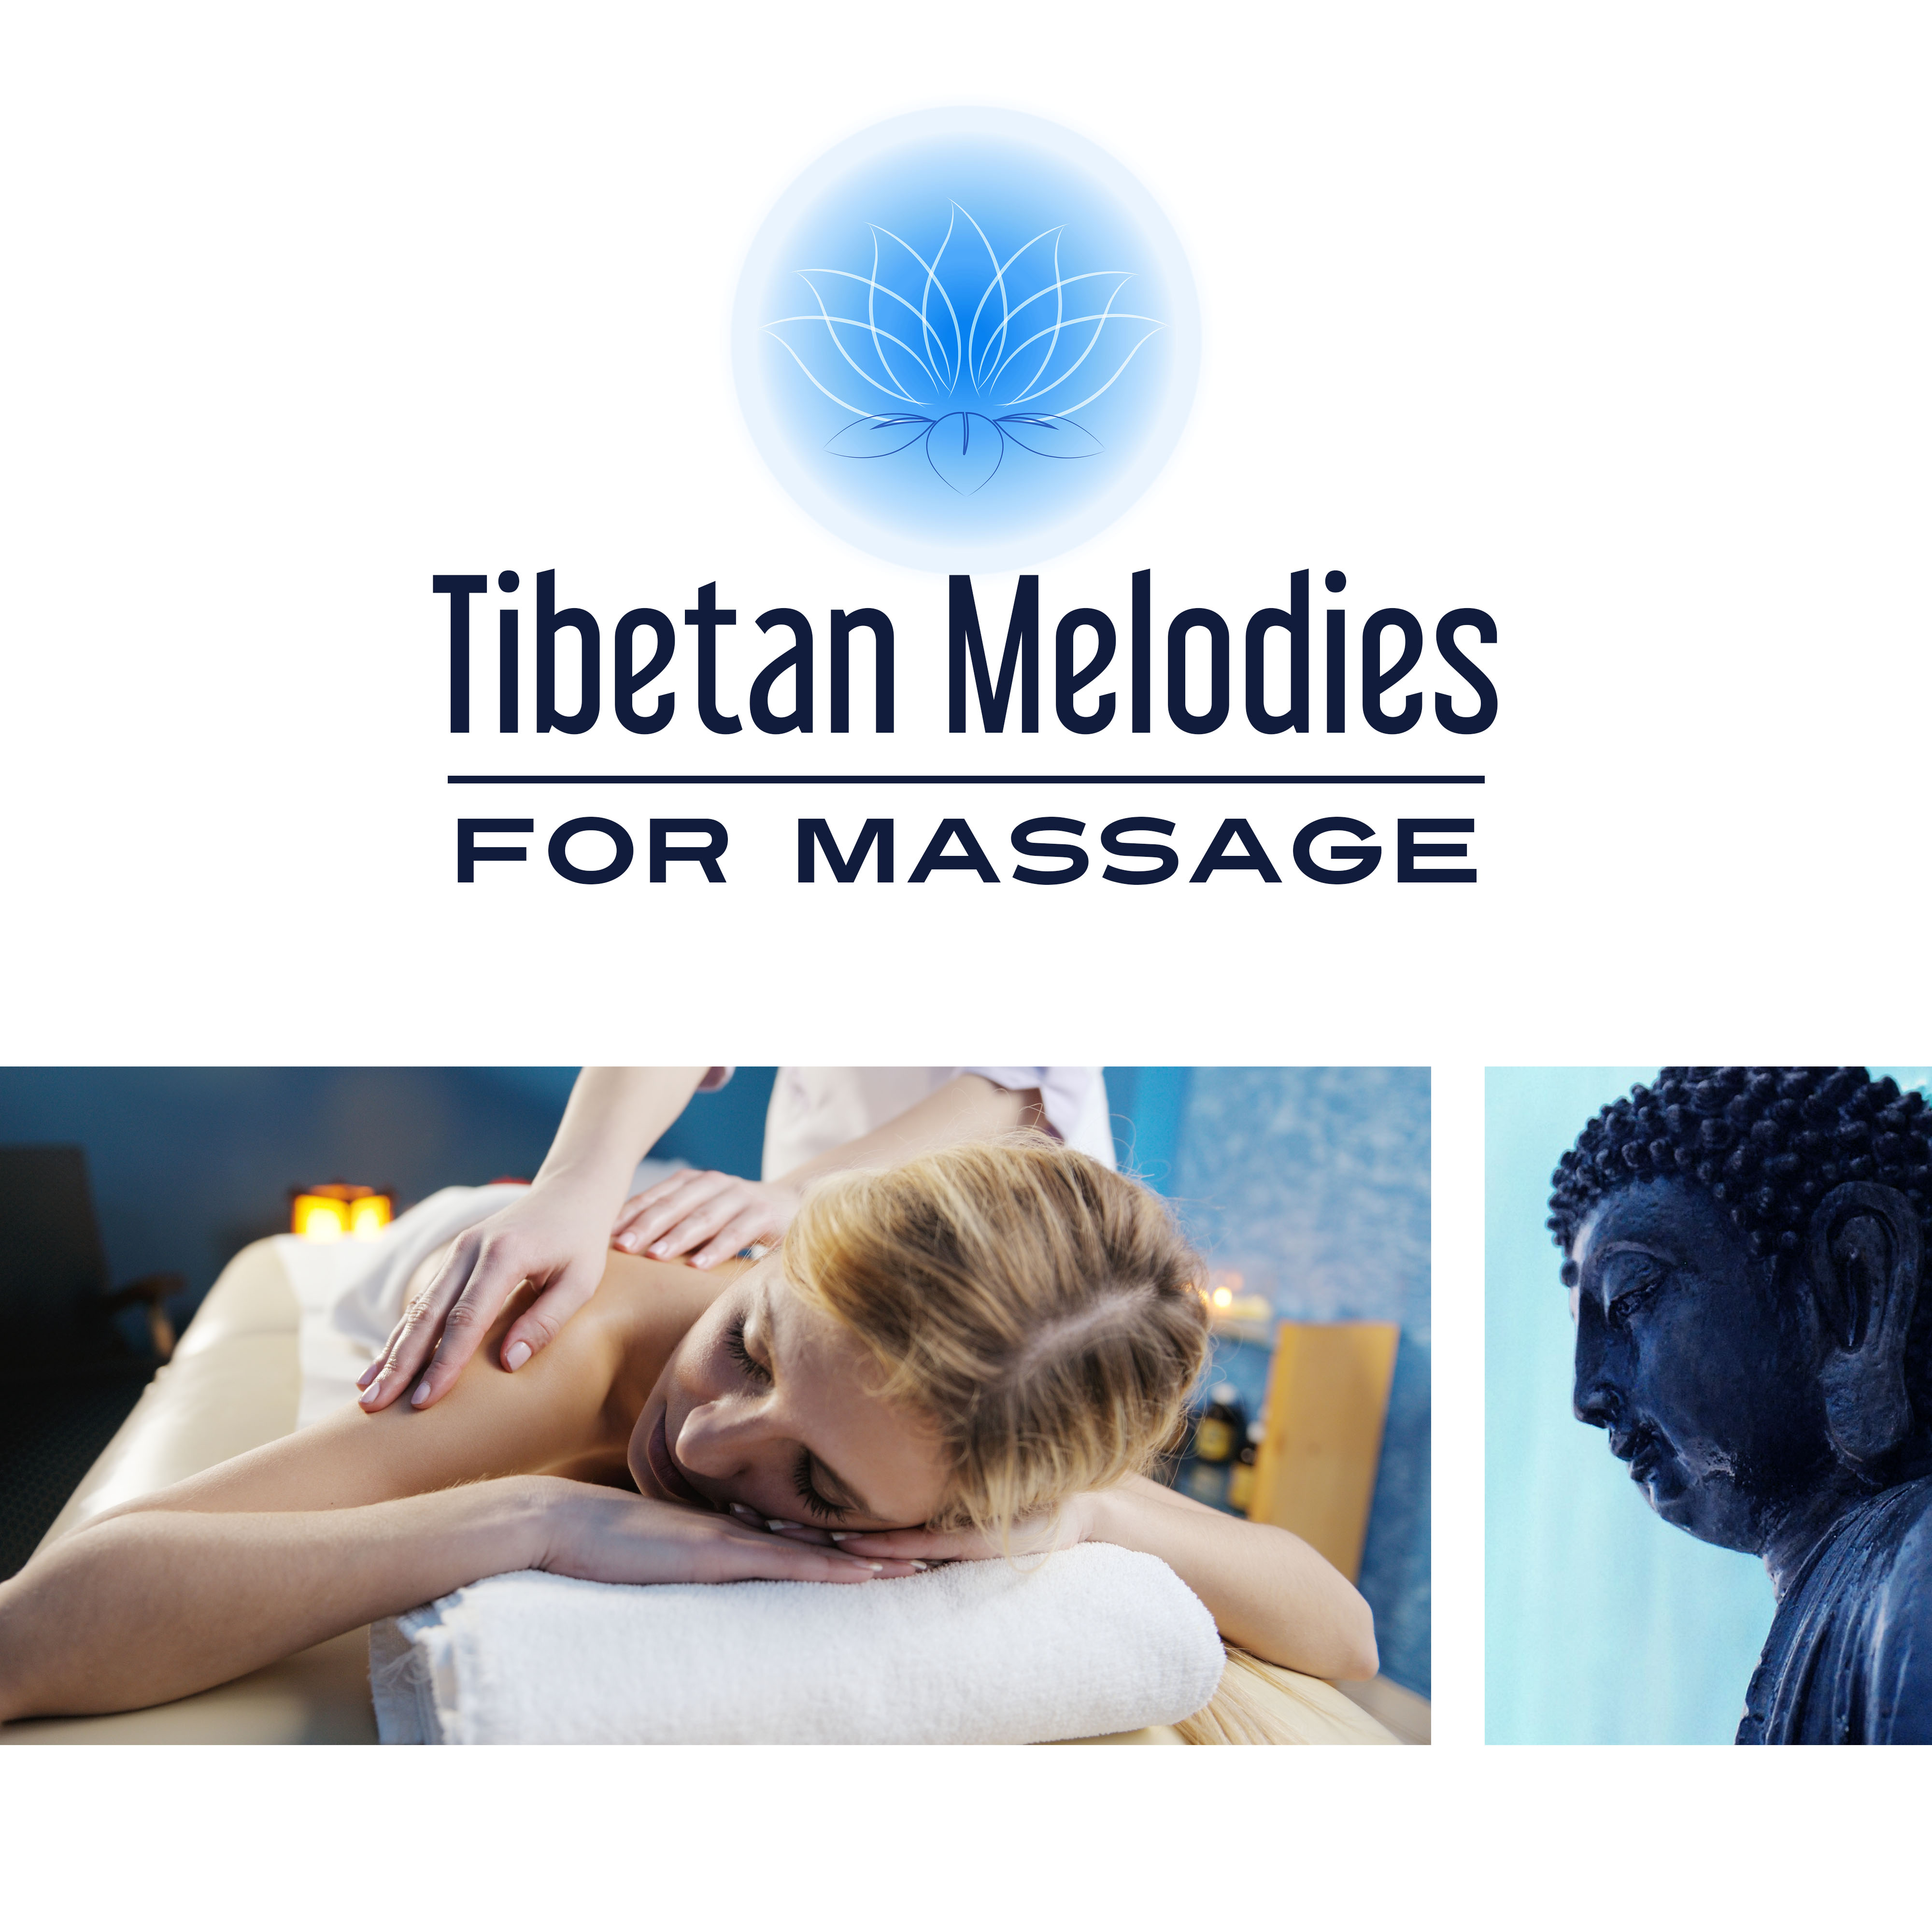 Tibetan Melodies for Massage – Massage Dream, Healing Tibetan Melody, Massage Tribe, Spa, Welness, Deep Relaxation